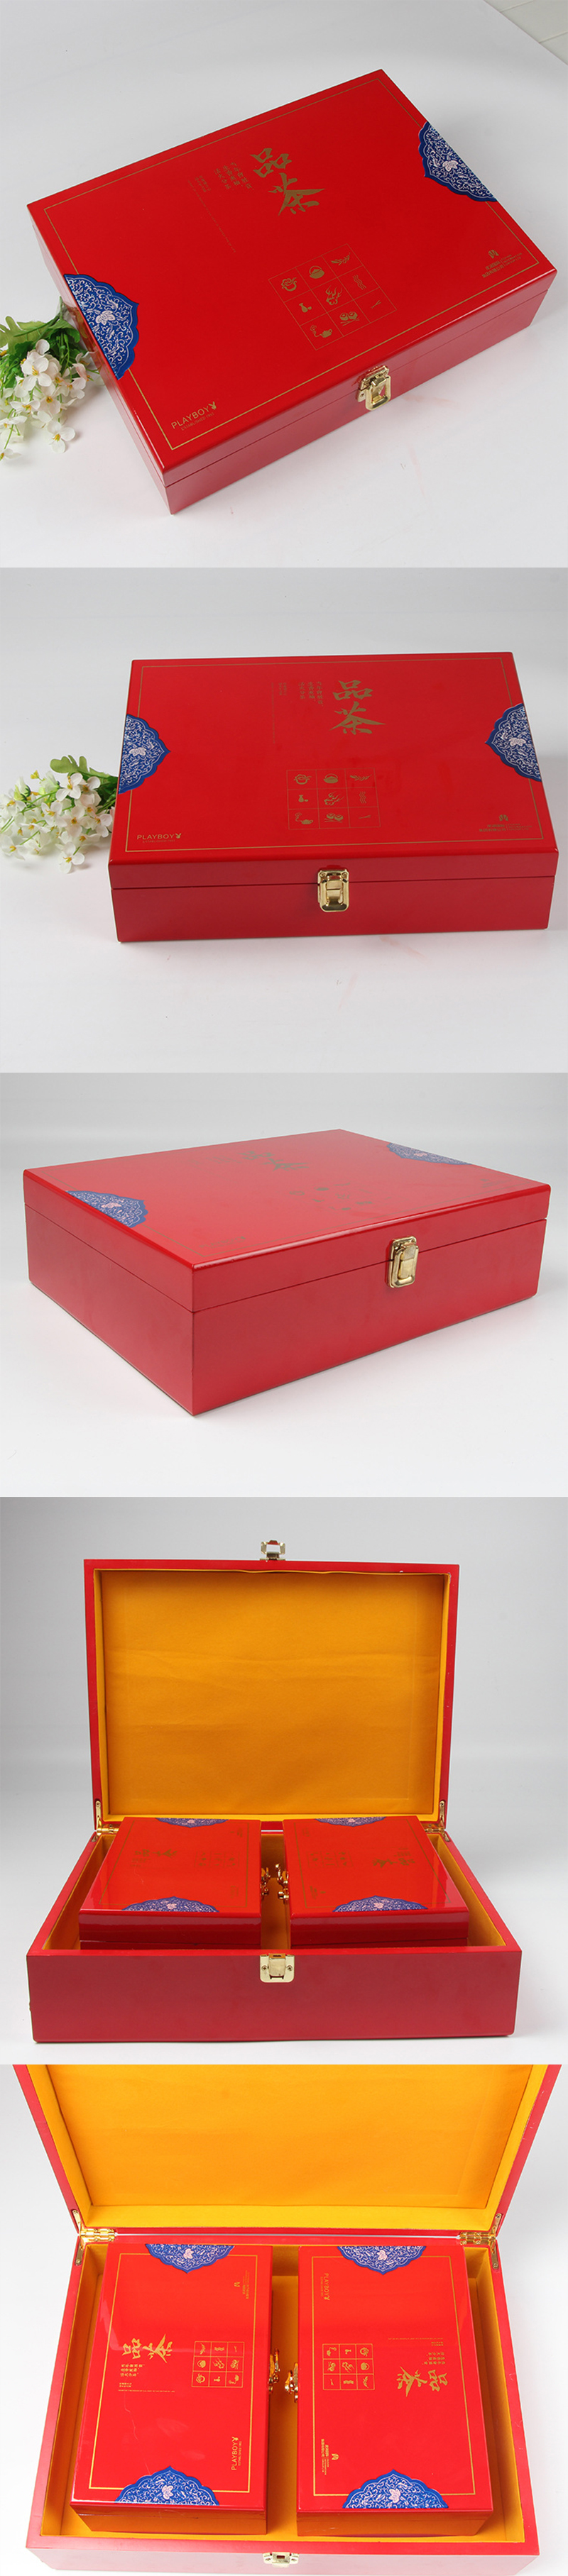 红色高档茶叶礼盒木盒设计